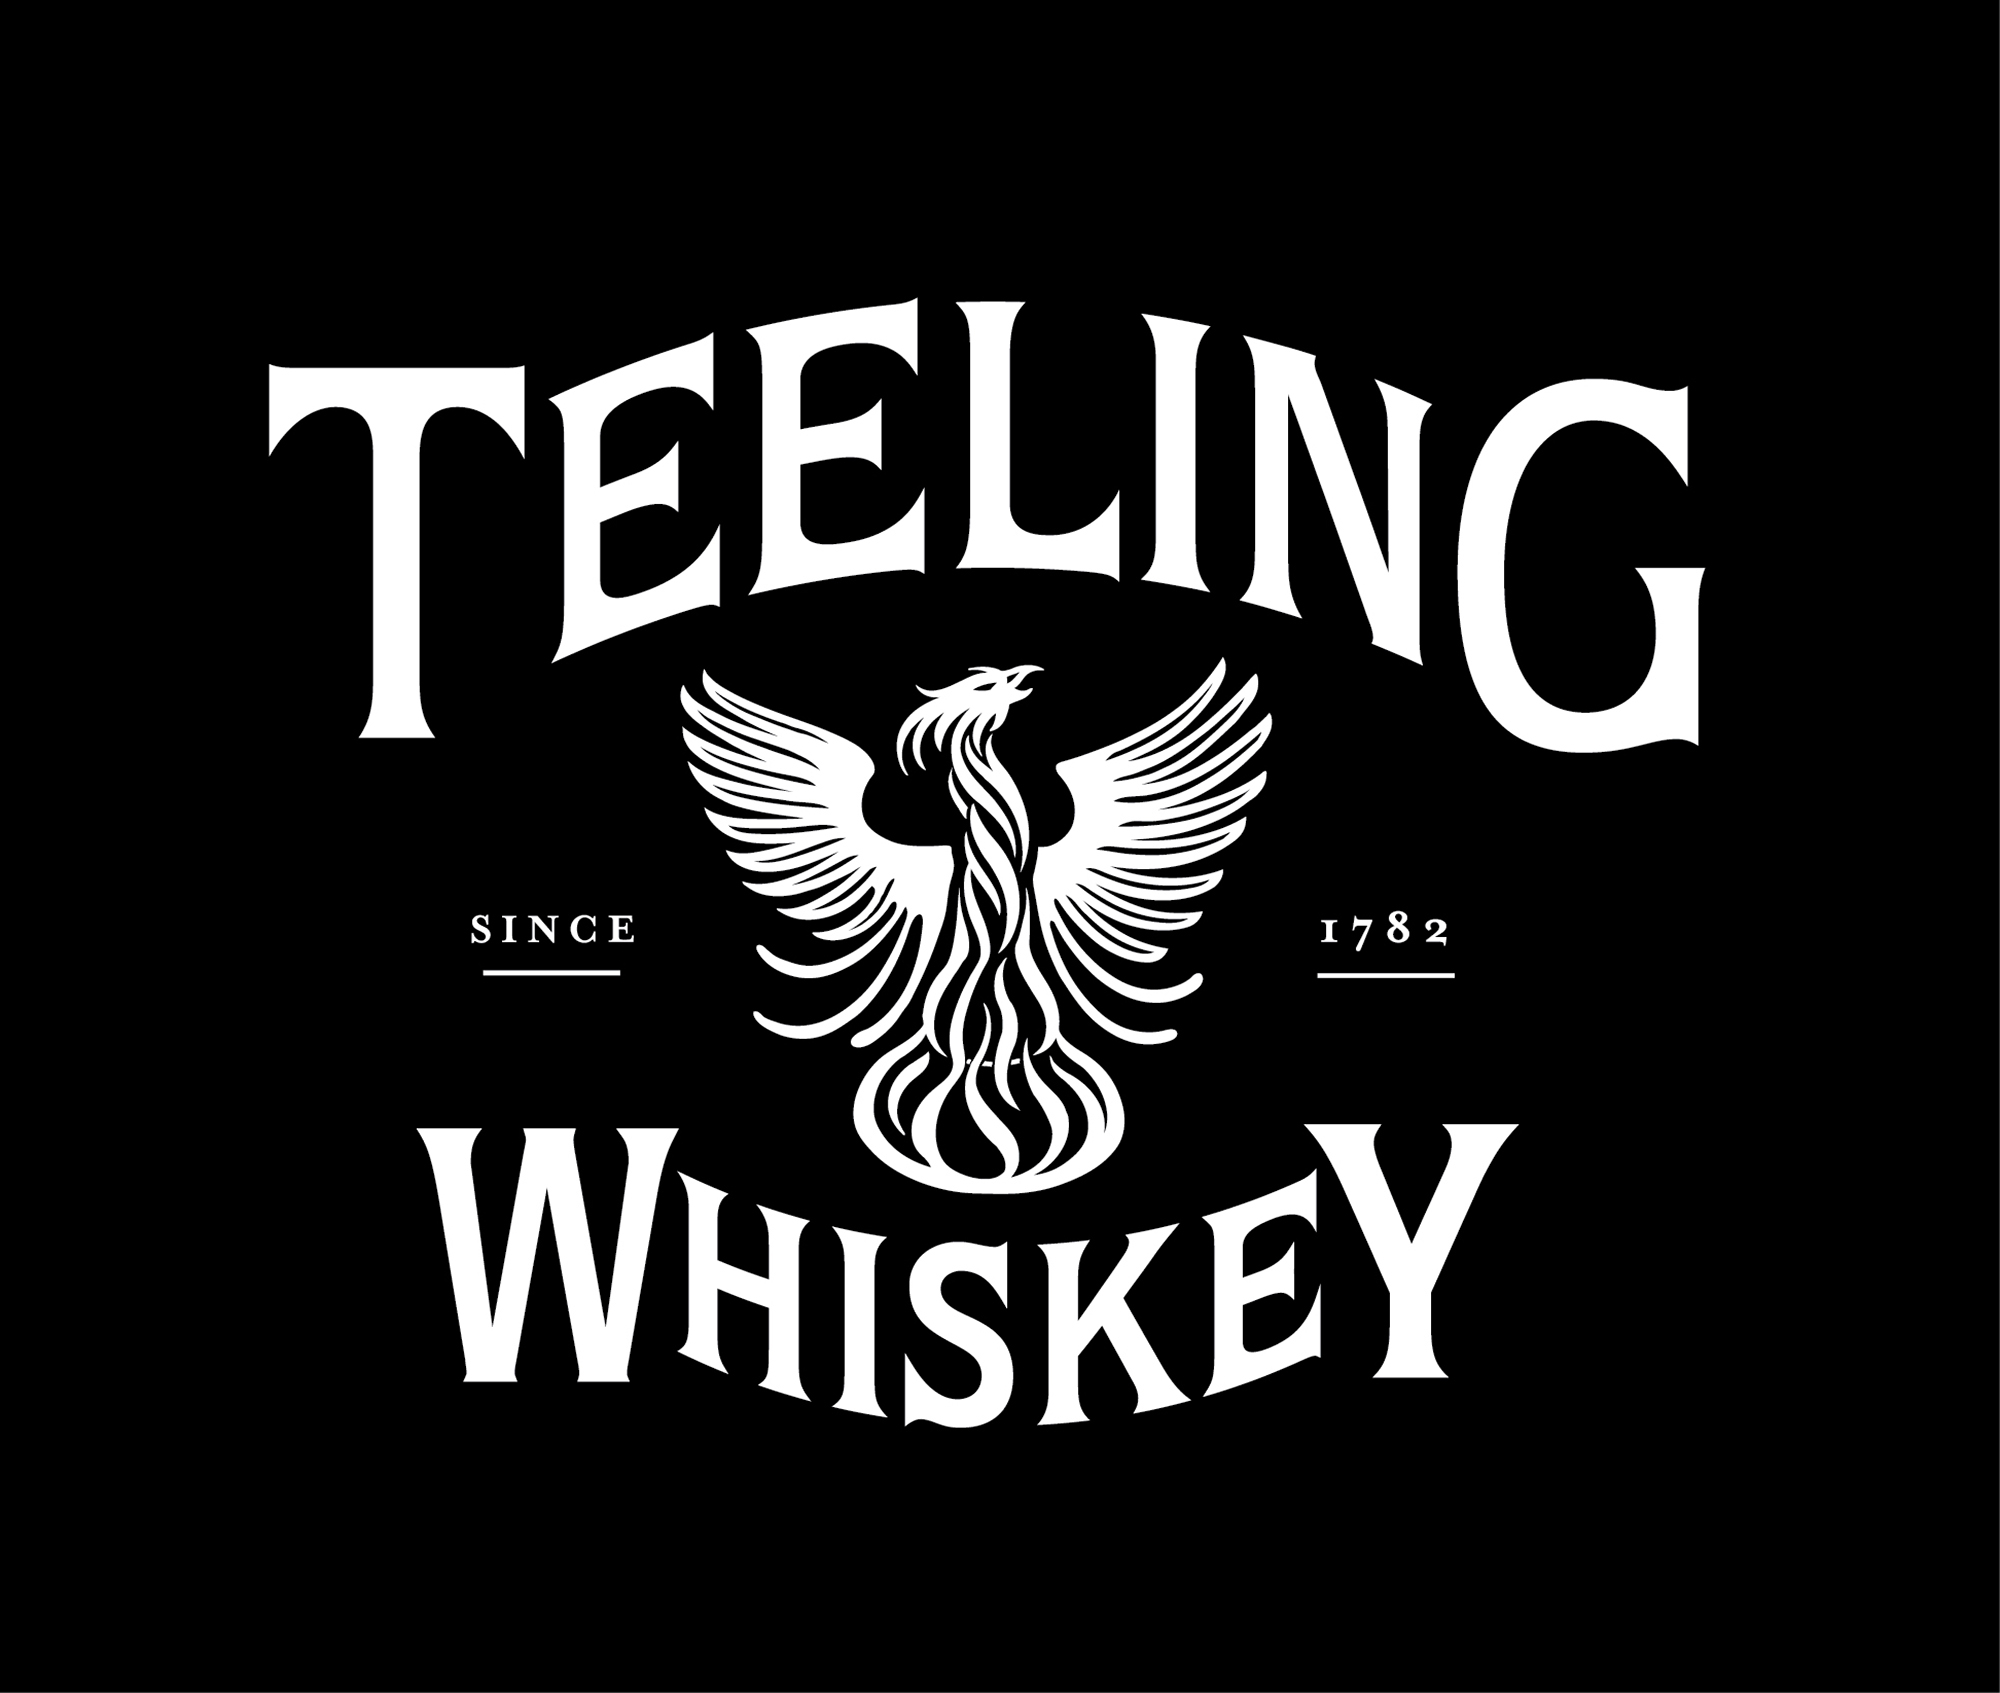 Teeling Whiskey logo